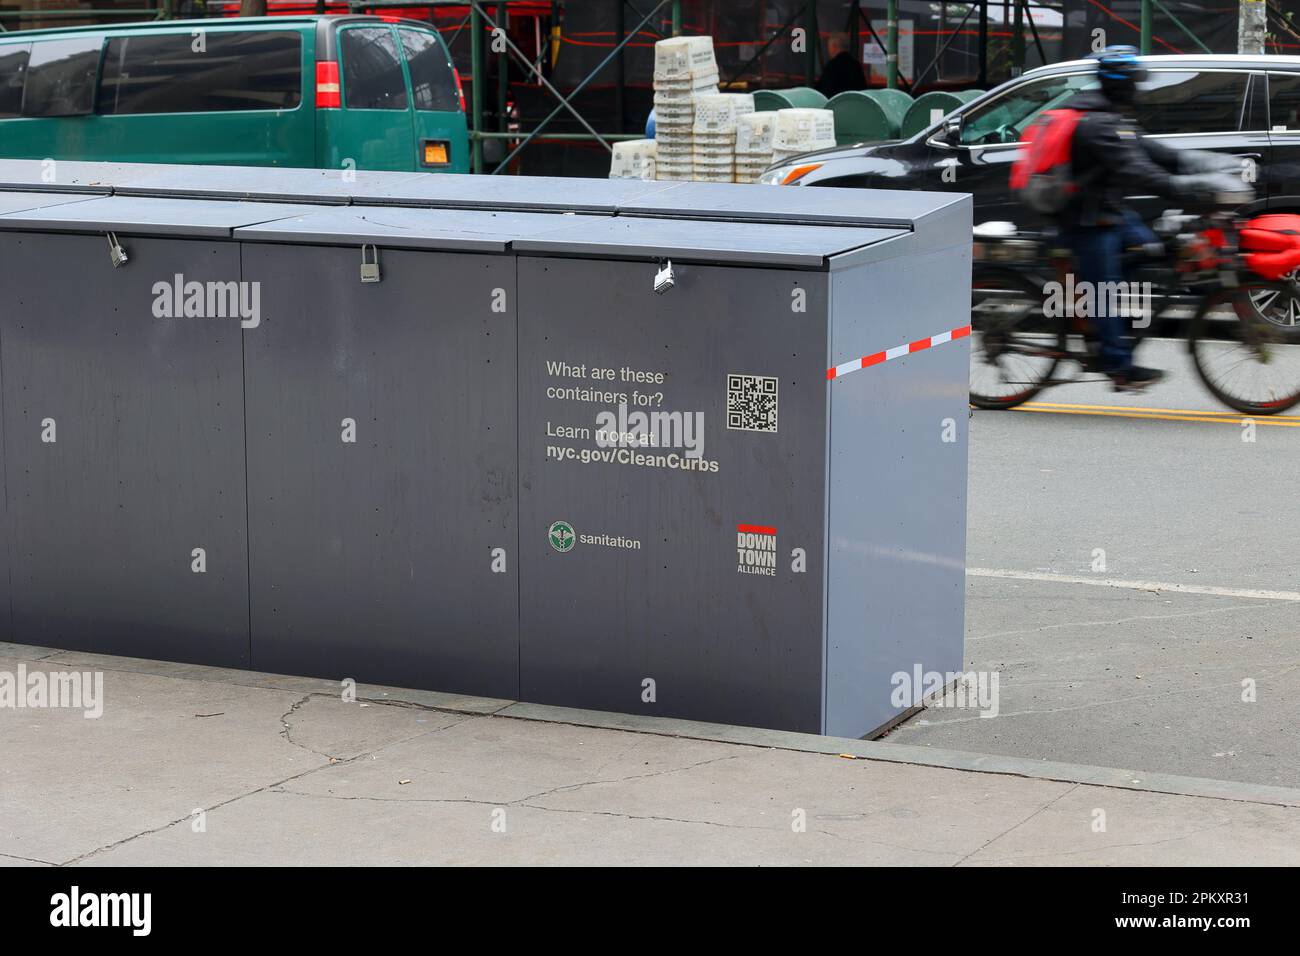 Contenitori a prova di ratto approvati in base al programma di marciapiedi puliti di New York City per lo stoccaggio temporaneo di sacchi per rifiuti fino alla raccolta dei rifiuti. Foto Stock